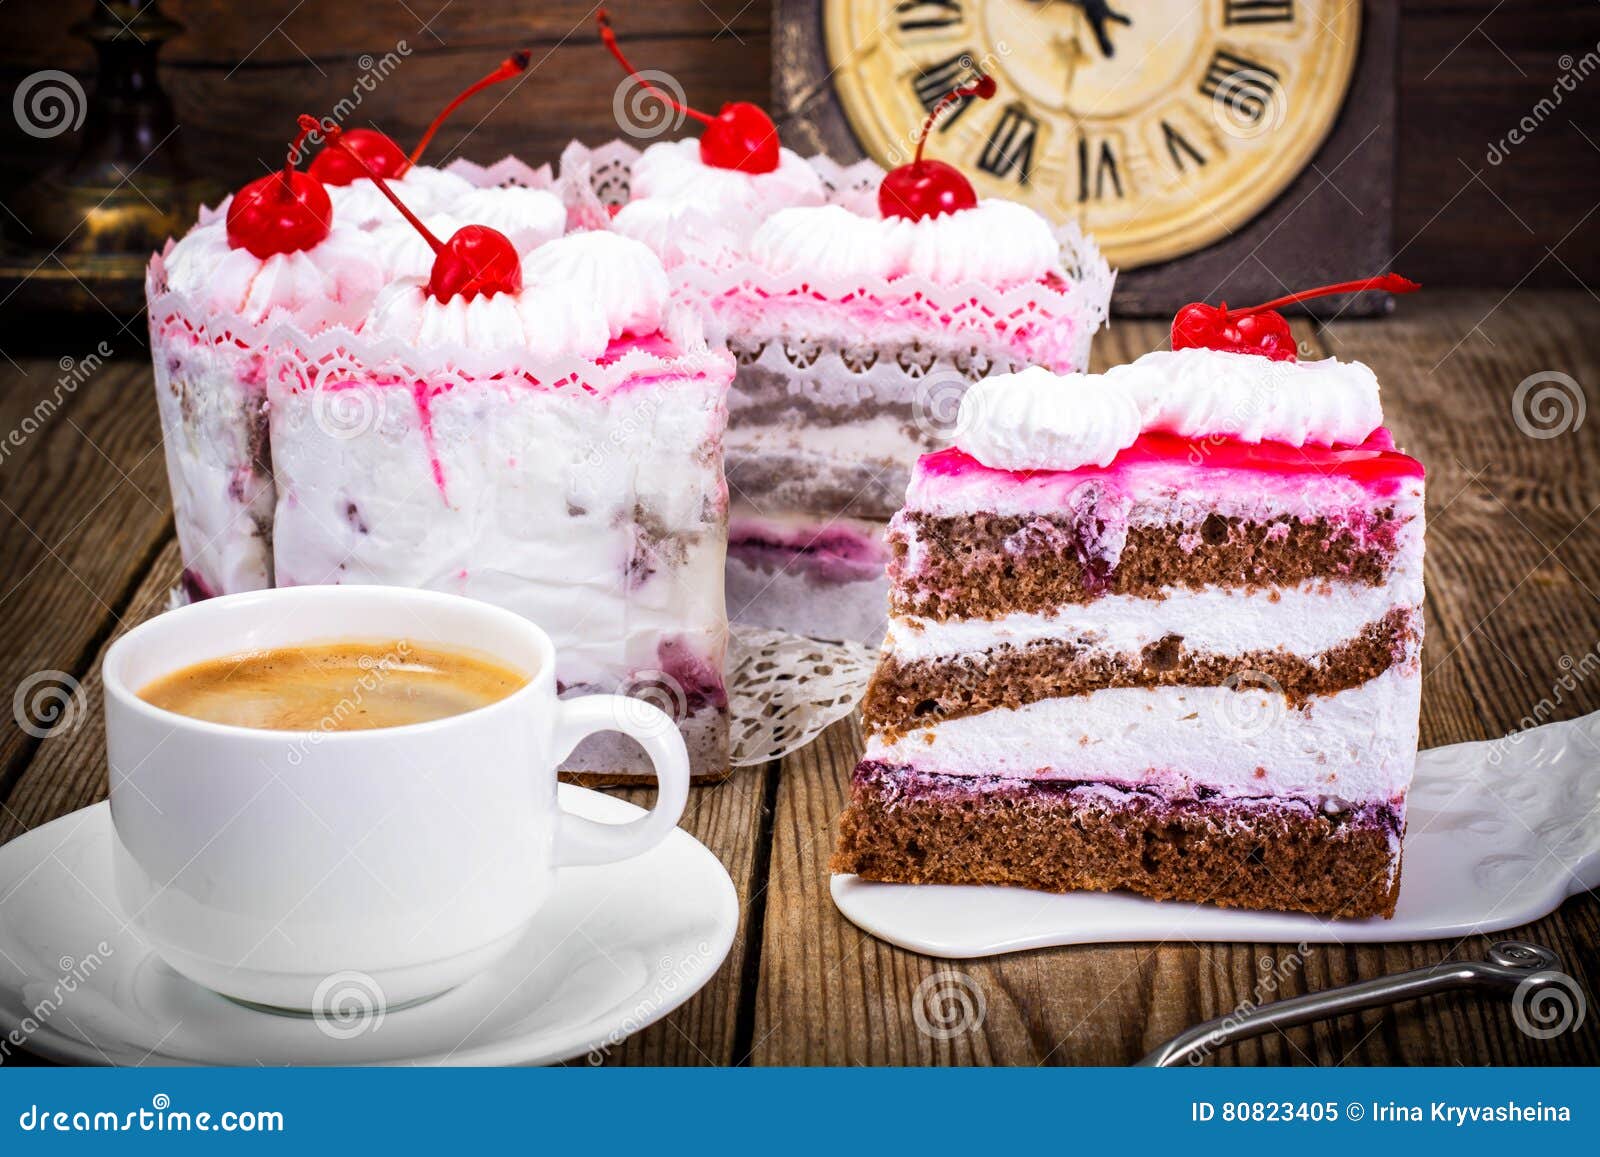 37+ großartig Foto Kaffee Und Kuchen Bilder / Tasse Kaffee und Kuchen stockbild. Bild von getränk ... / Kaffee kuchen lebensmittel küche dessert cafe süß lecker essen kaffeetasse.